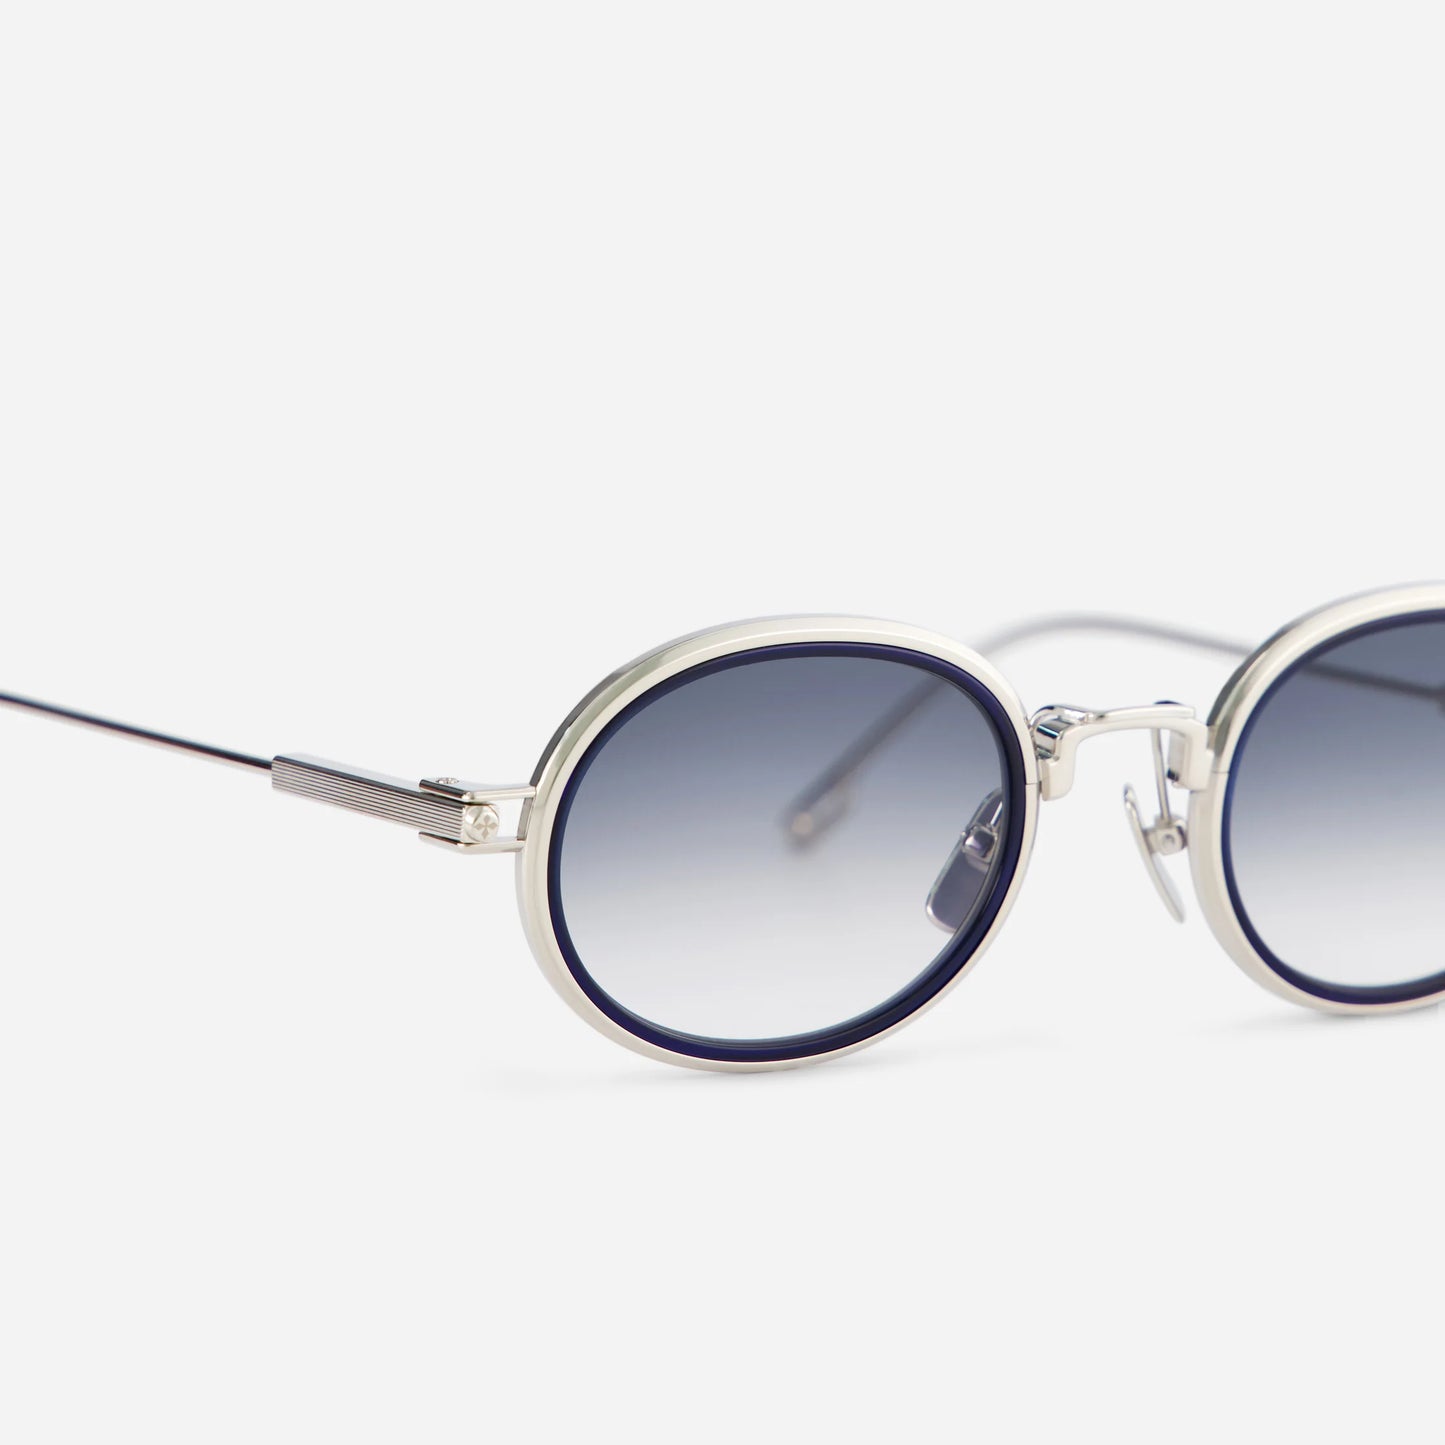 Acamar-T S1101 - Sato round sunglasses with gradient blue lenses.